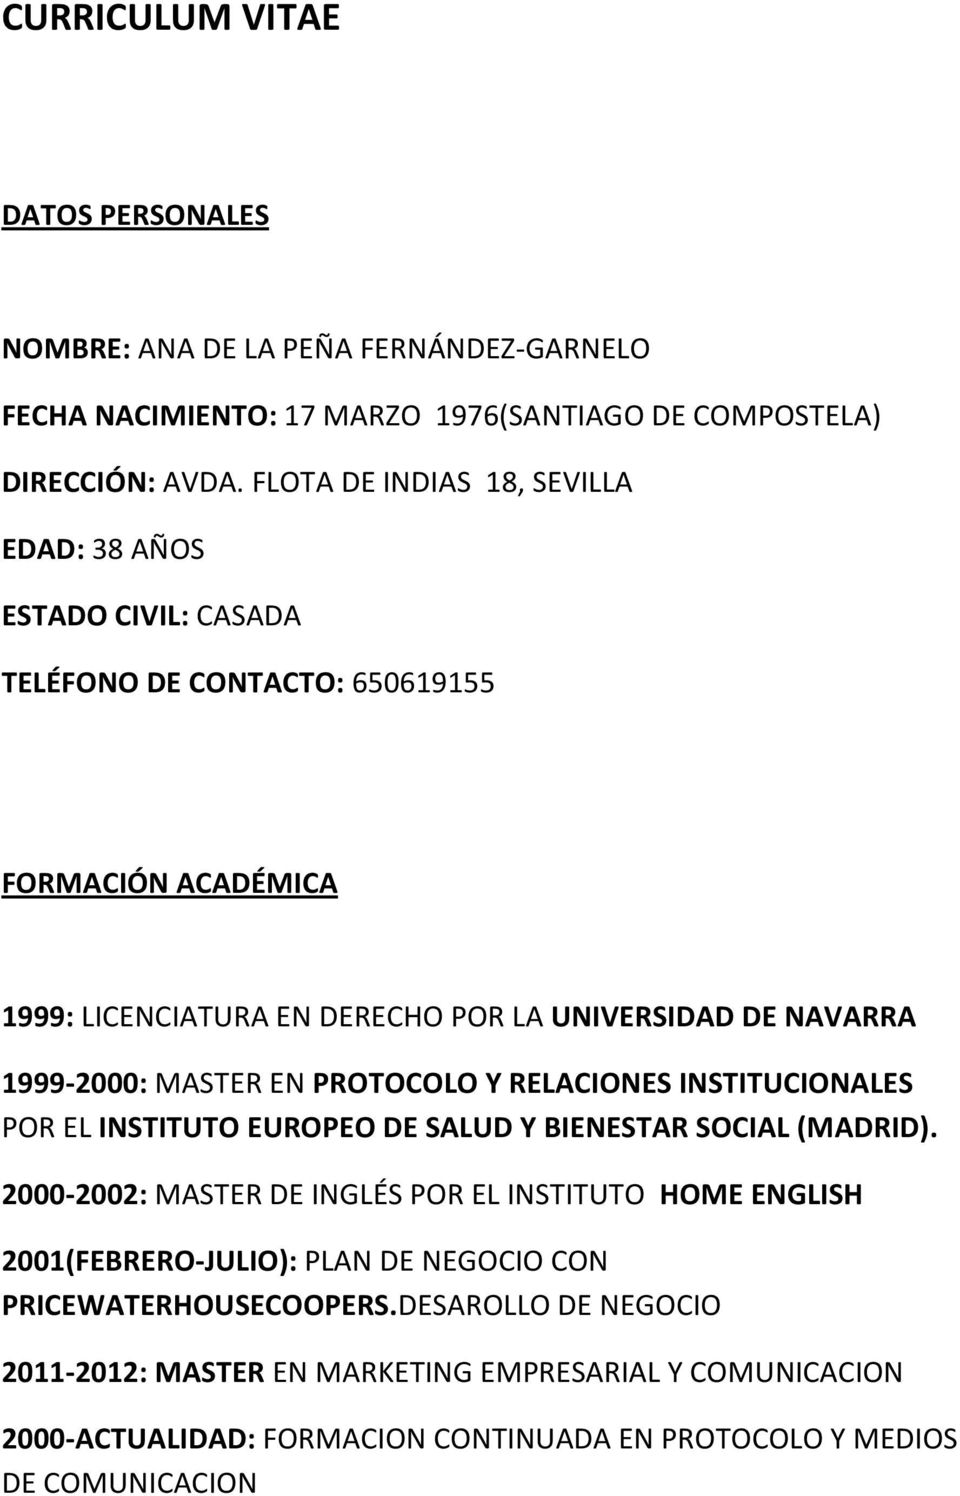 1999-2000: MASTER EN PROTOCOLO Y RELACIONES INSTITUCIONALES POR EL INSTITUTO EUROPEO DE SALUD Y BIENESTAR SOCIAL (MADRID).